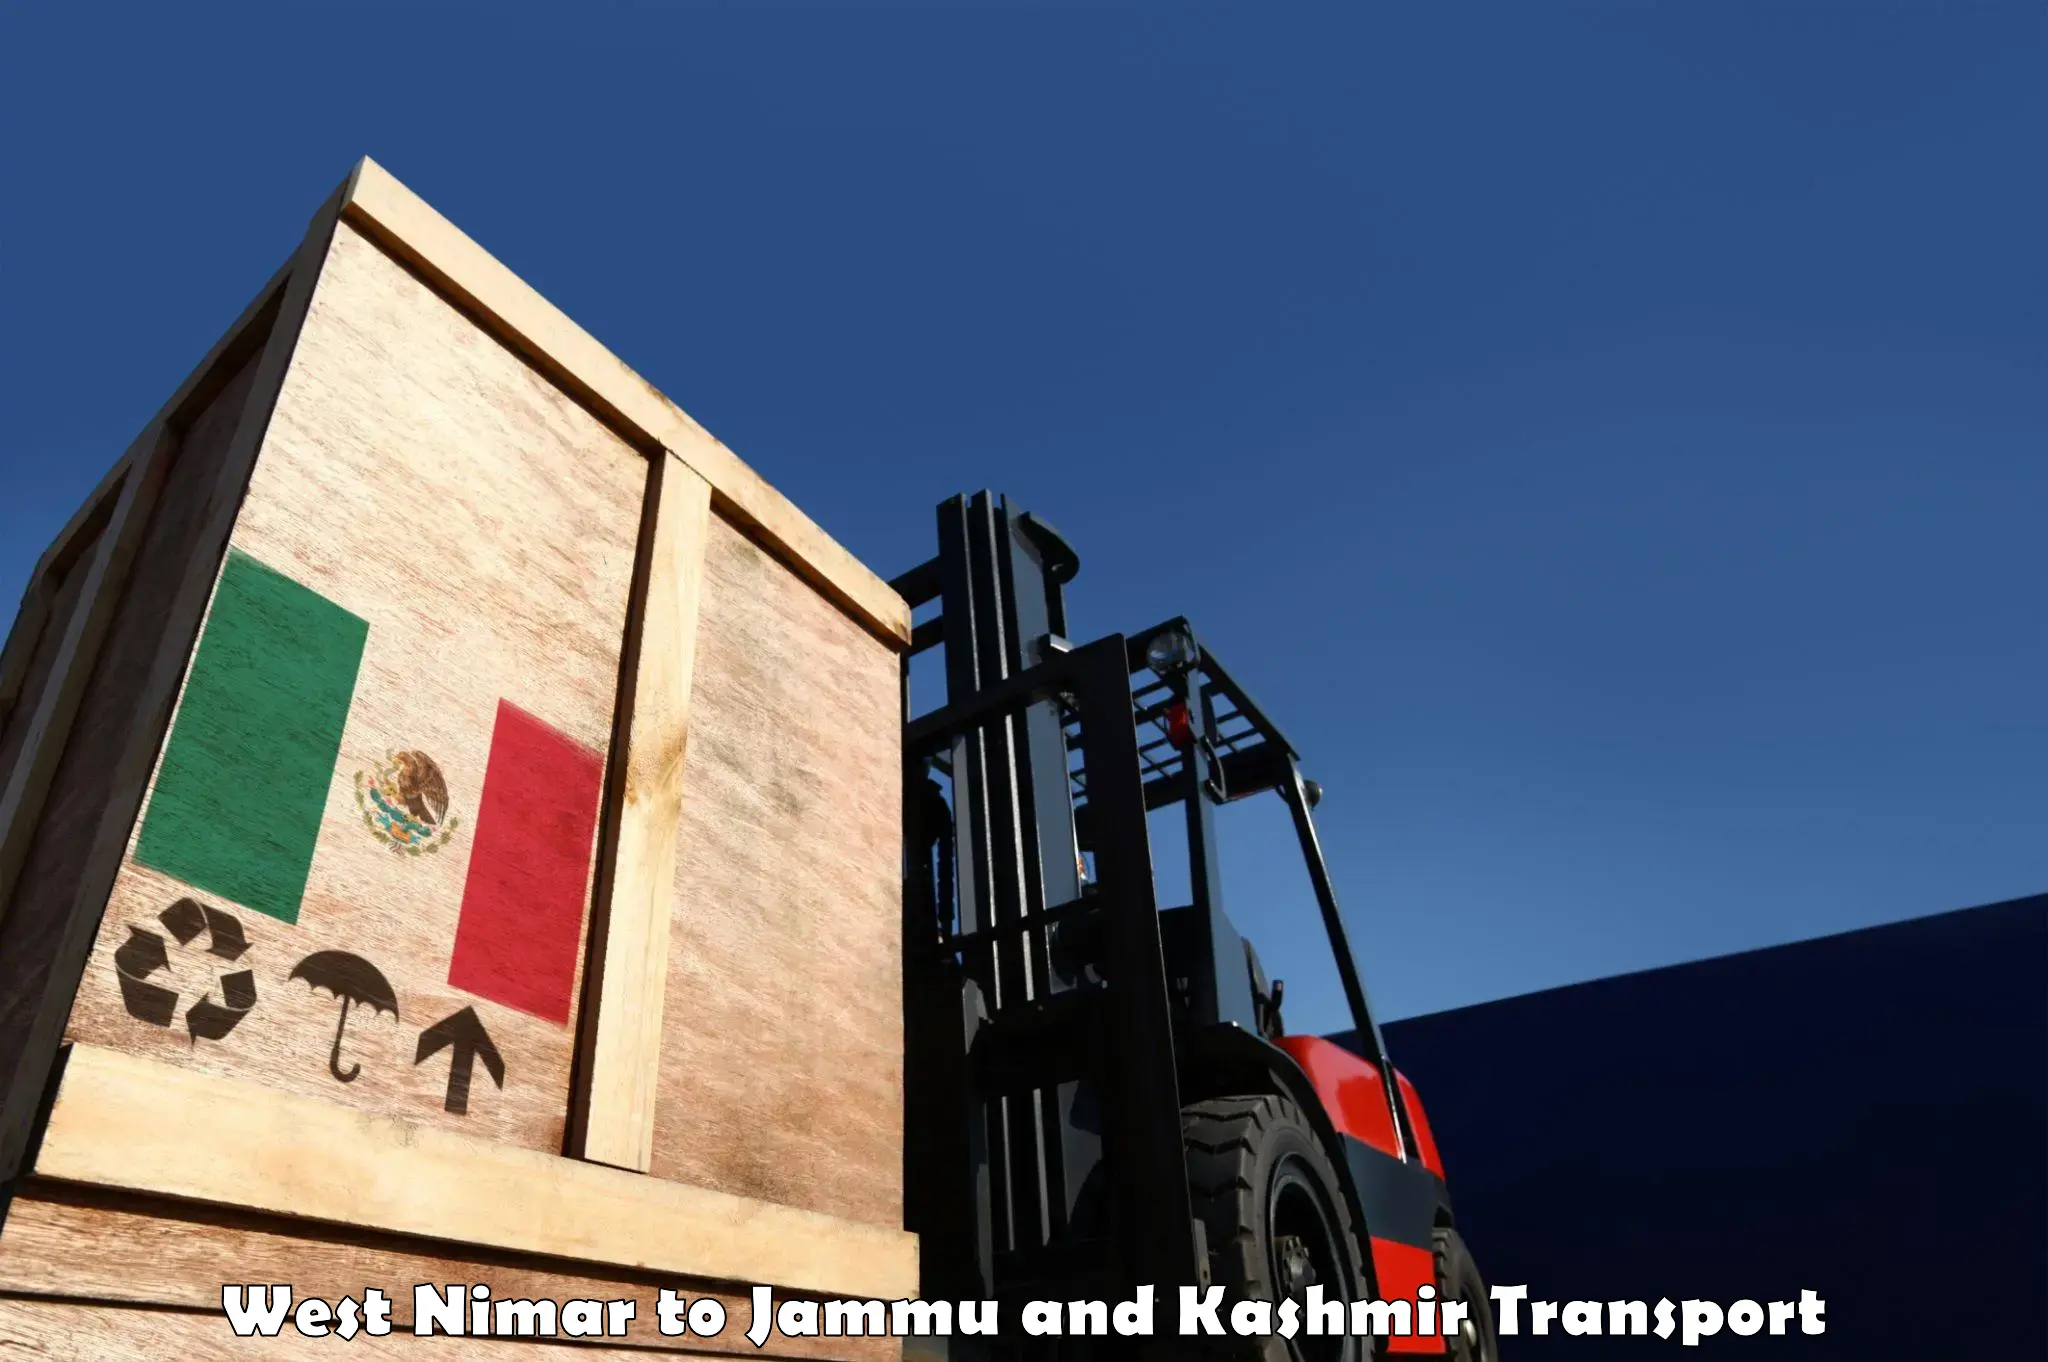 Transport shared services in West Nimar to Kargil